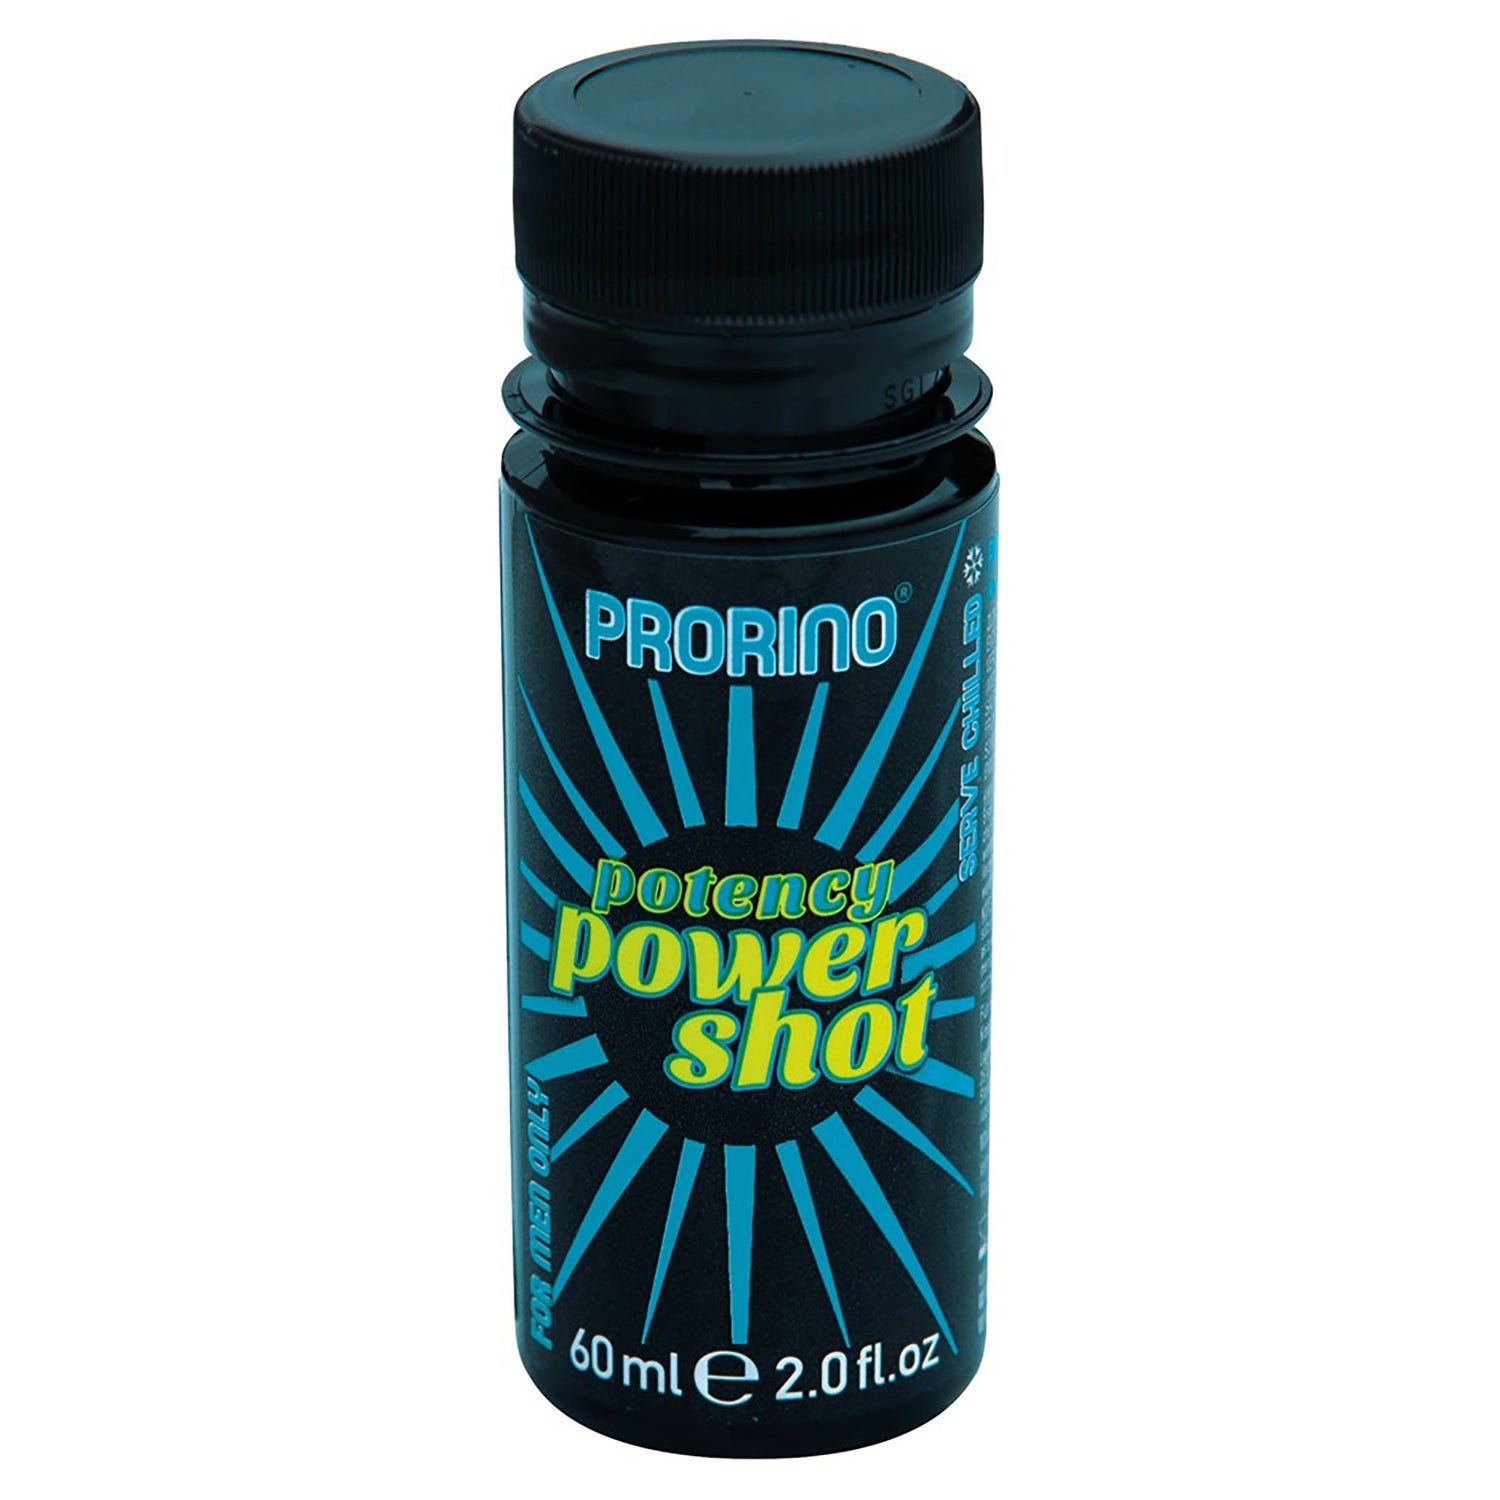 Potency Power Shot, potenzsteigernder Trunk in kleiner Flasche